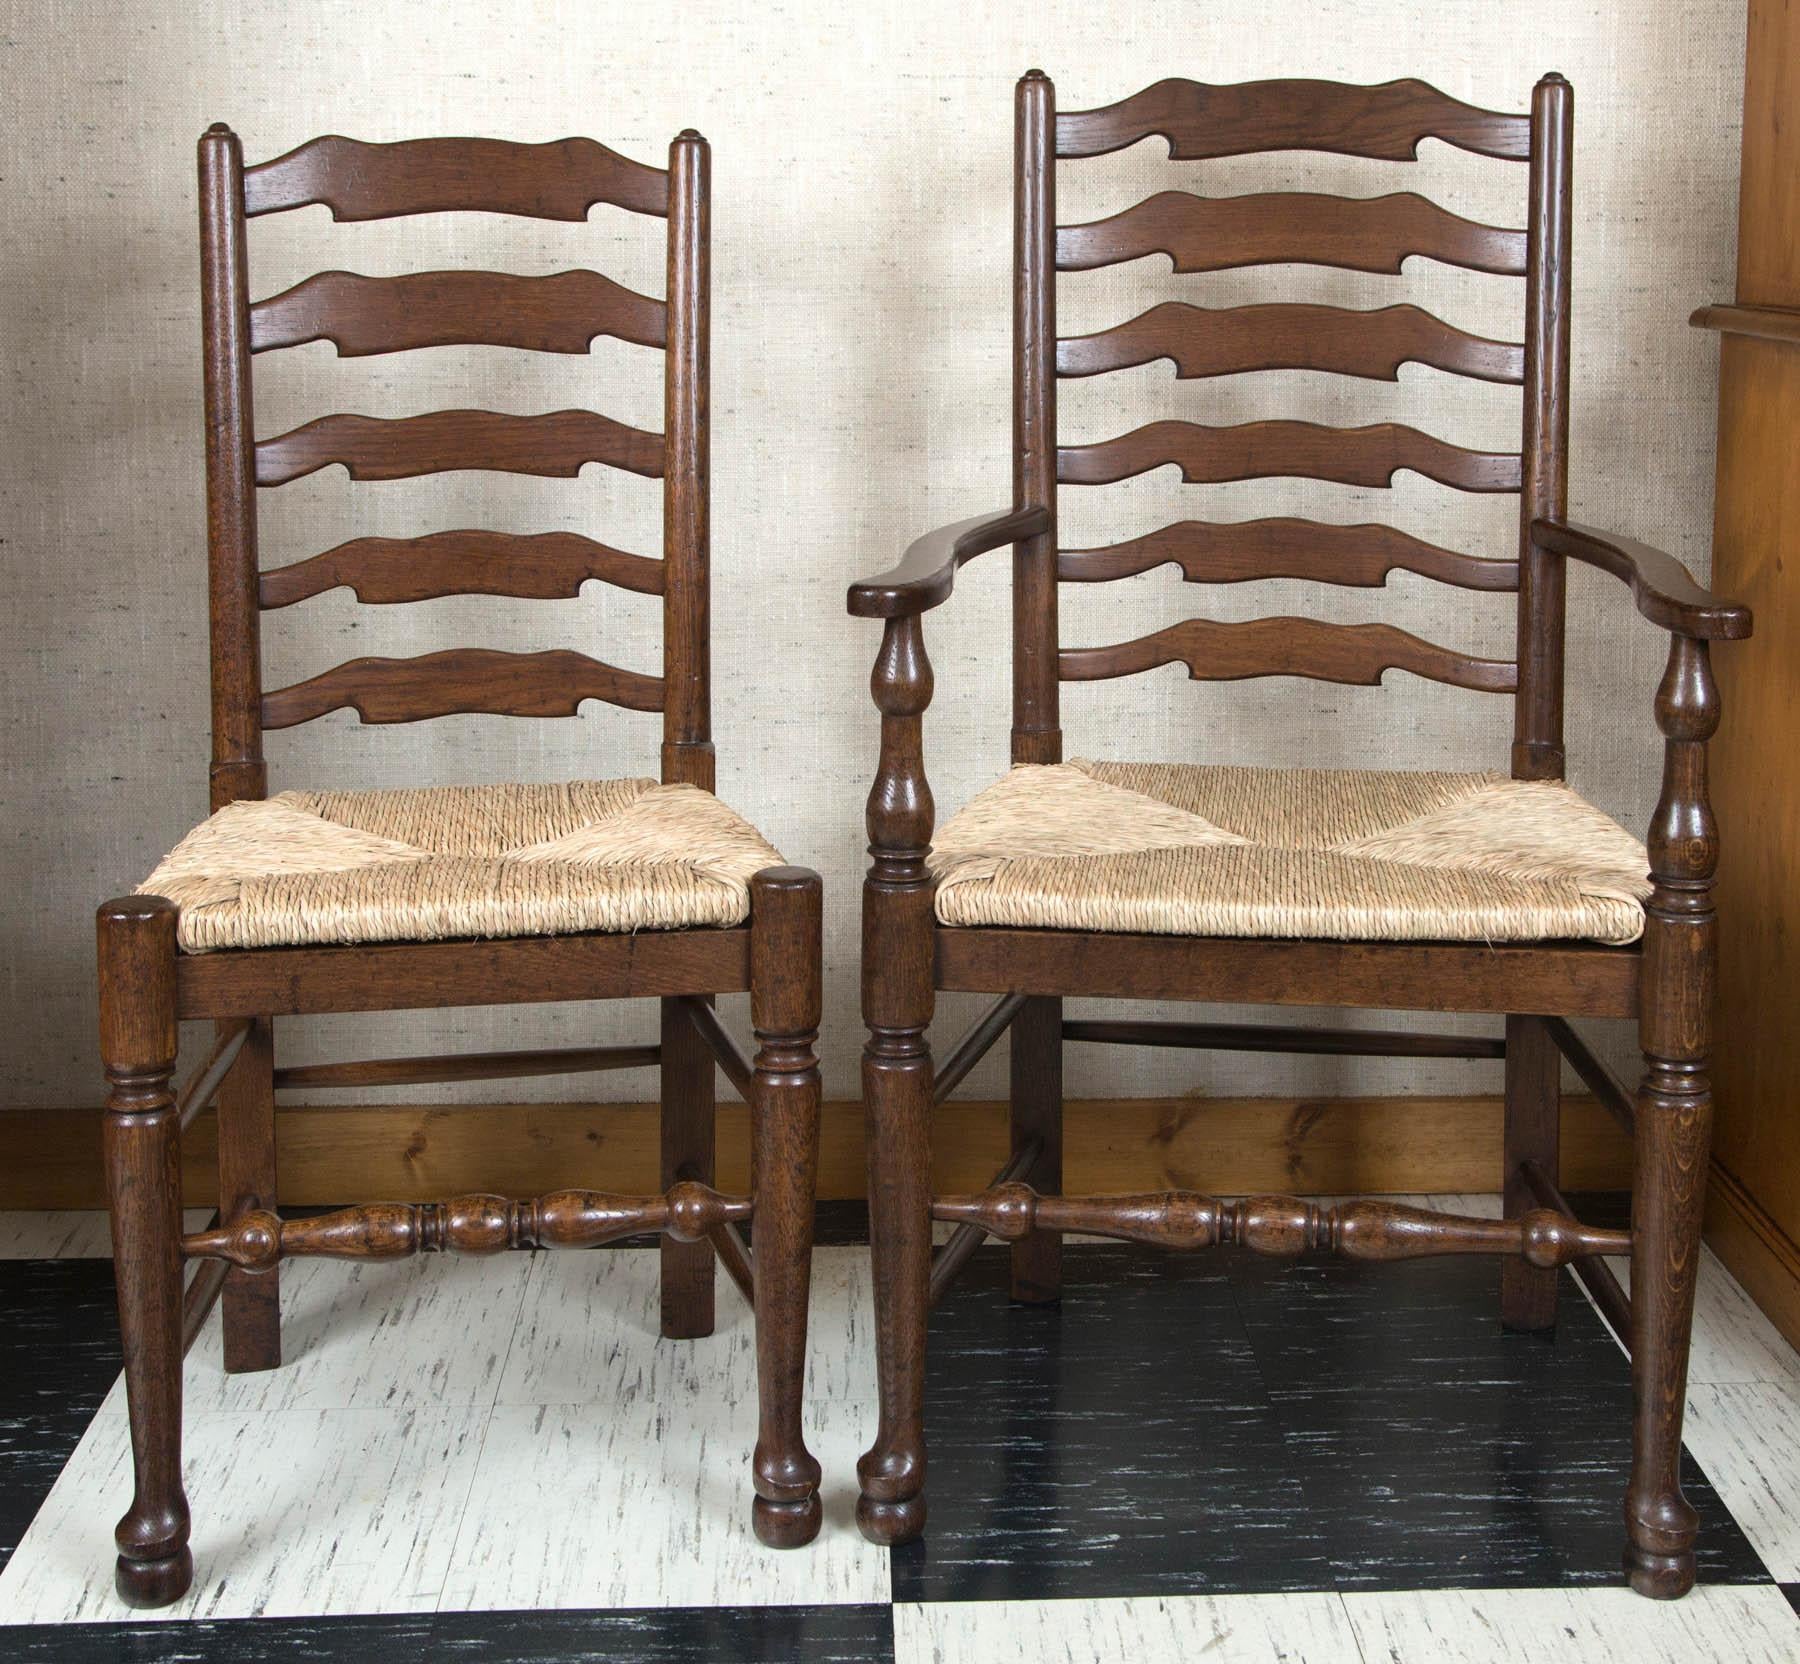 Il s'agit d'un ensemble de huit (deux bras, six côtés) chaises anglaises à dossier en échelle ondulée qui n'attendent que d'être utilisées dans une cuisine de campagne. La construction robuste en chêne garantit des années d'utilisation pratique,